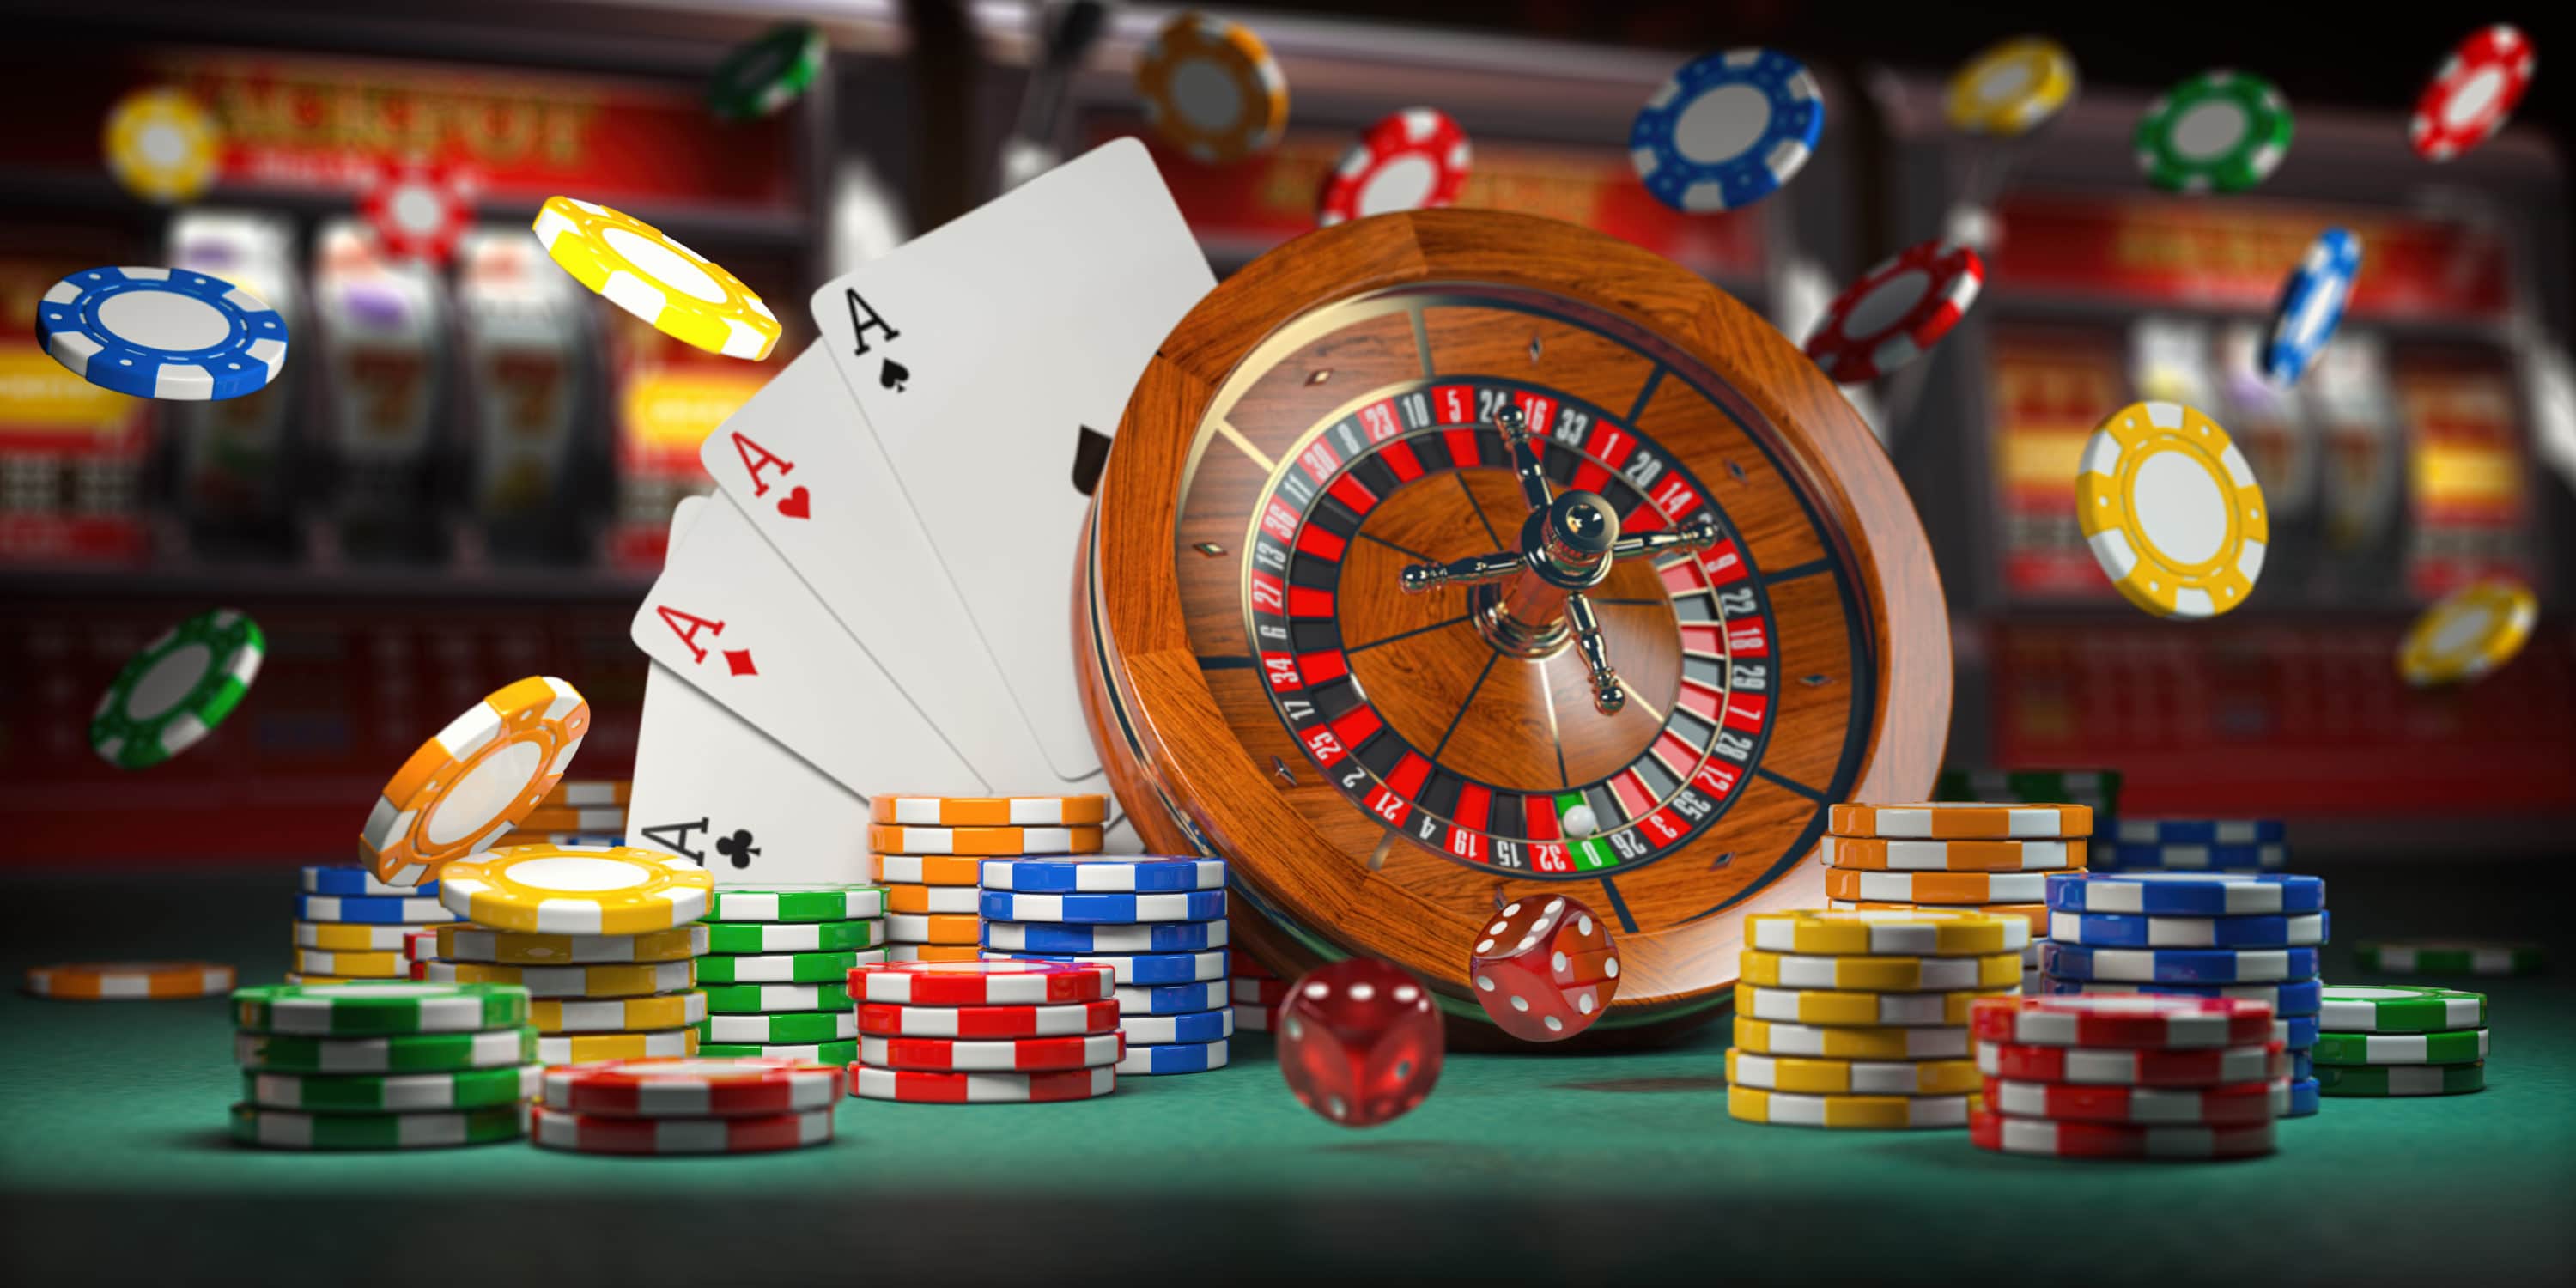 Spielbank oder Online Casino - Der große Vergleich [Werbung]